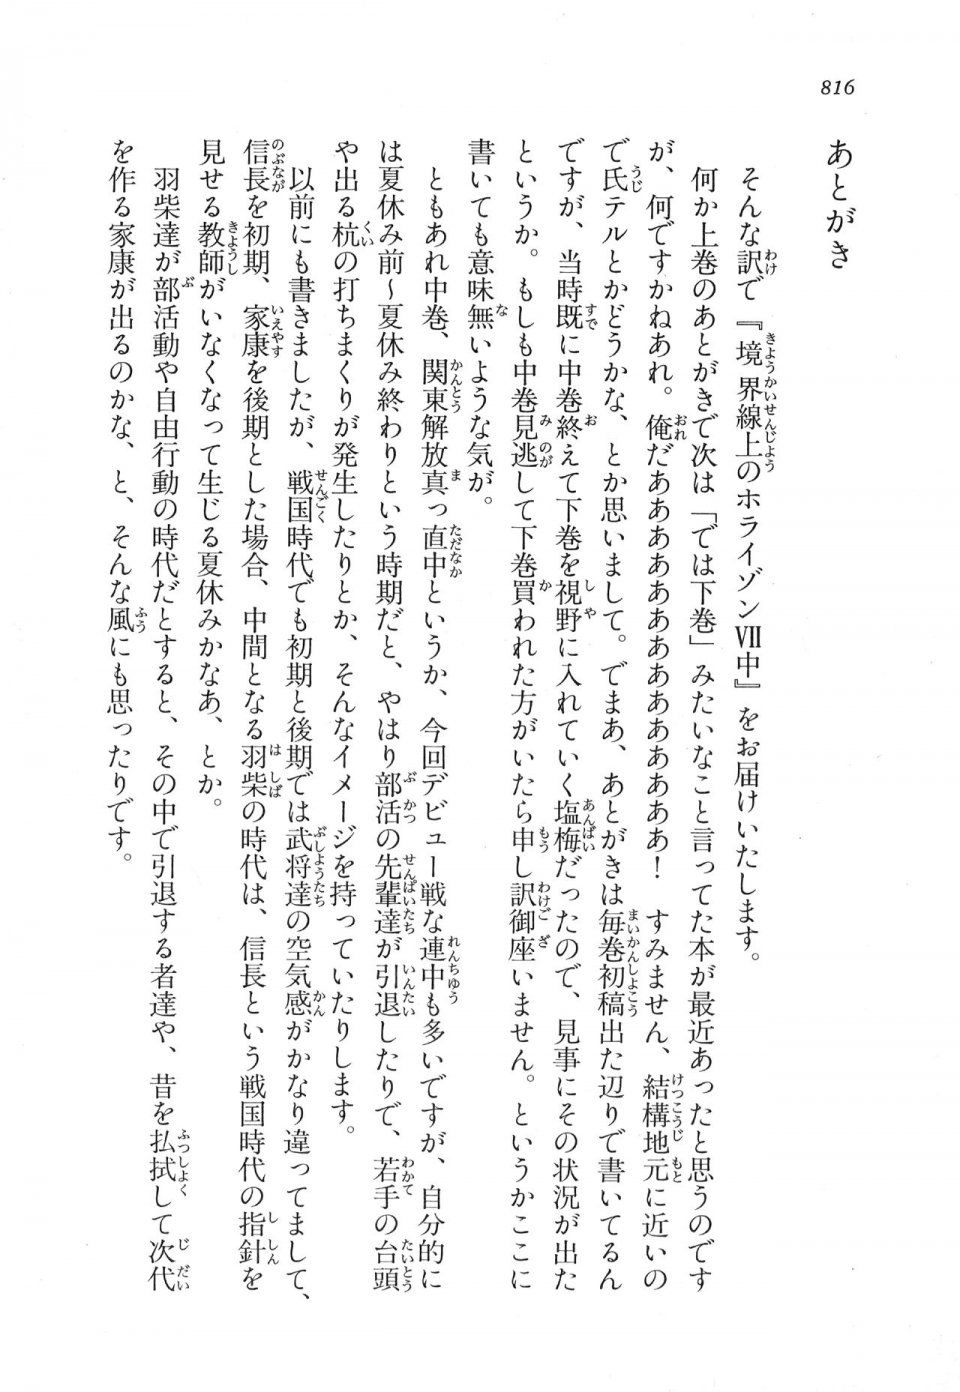 Kyoukai Senjou no Horizon LN Vol 17(7B) - Photo #818